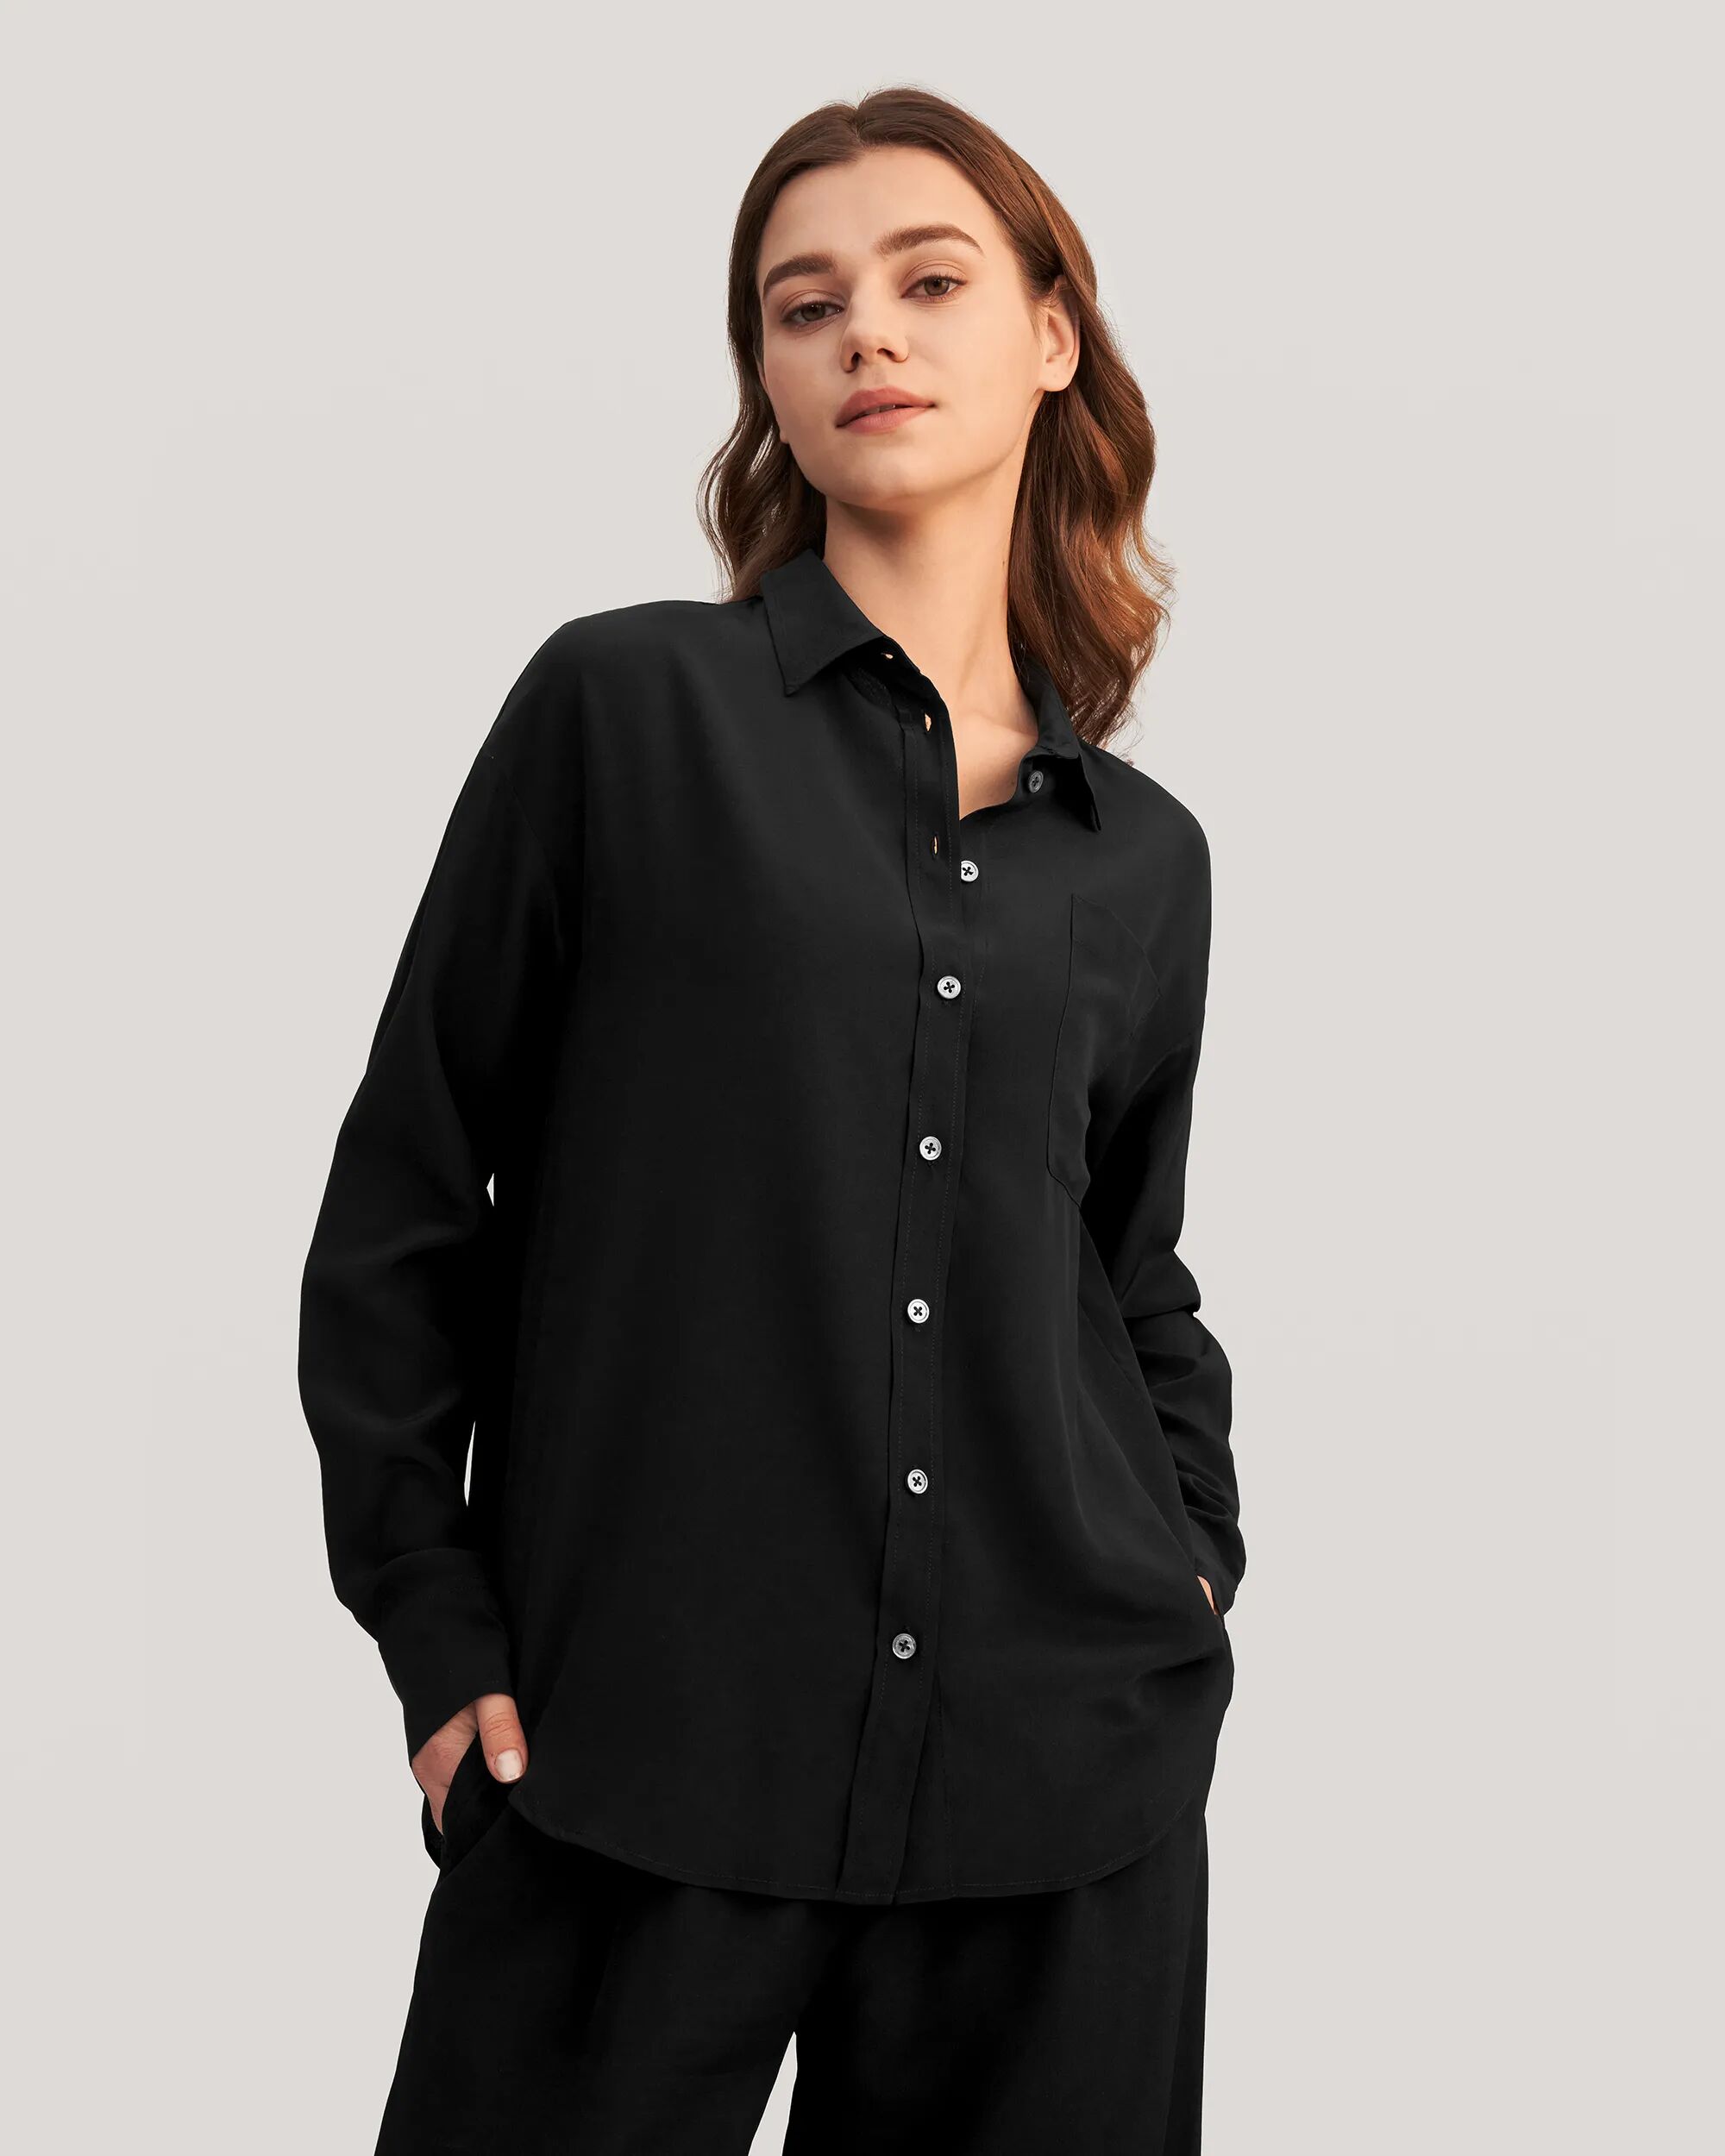 LILYSILK Business Black Shirt   Silk Plain   Women Tops 100% Grade 6A Mulberry Traditional Collar M